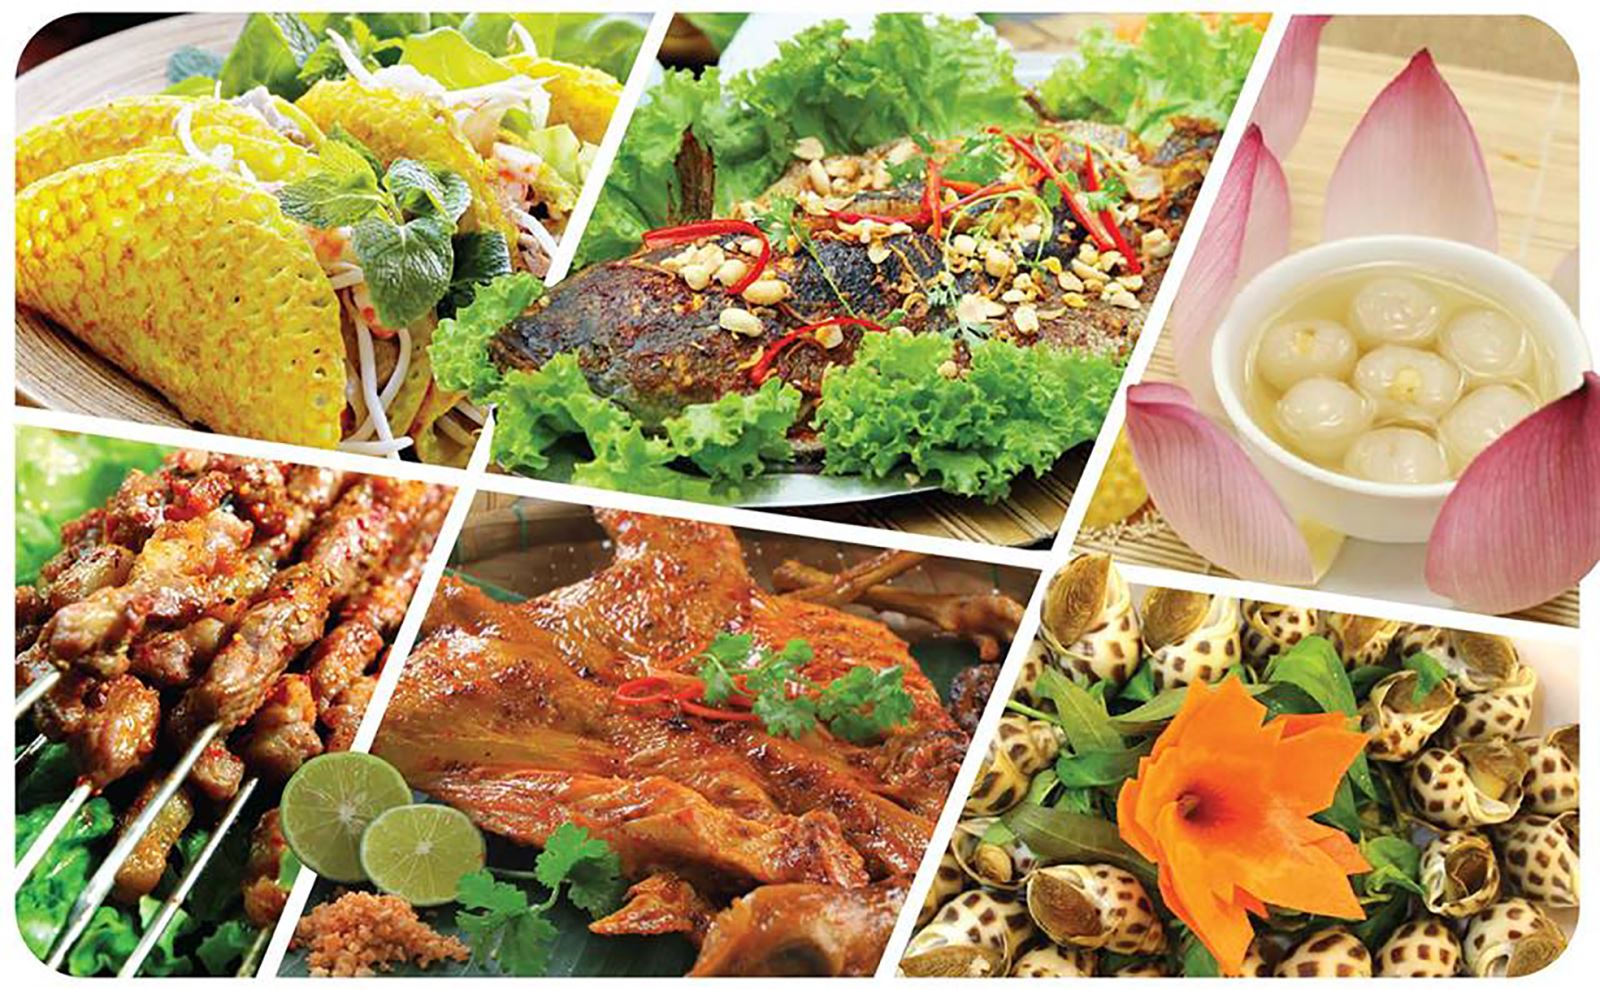 Món ăn Nam Bộ rất đa dạng, thay đổi tùy giai đoạn ngắn dài theo thời gian. Tuy nhiên, ẩm thực dân gian ở Nam Bộ vẫn giữ được hồn cốt bản sắc văn hóa dân tộc.